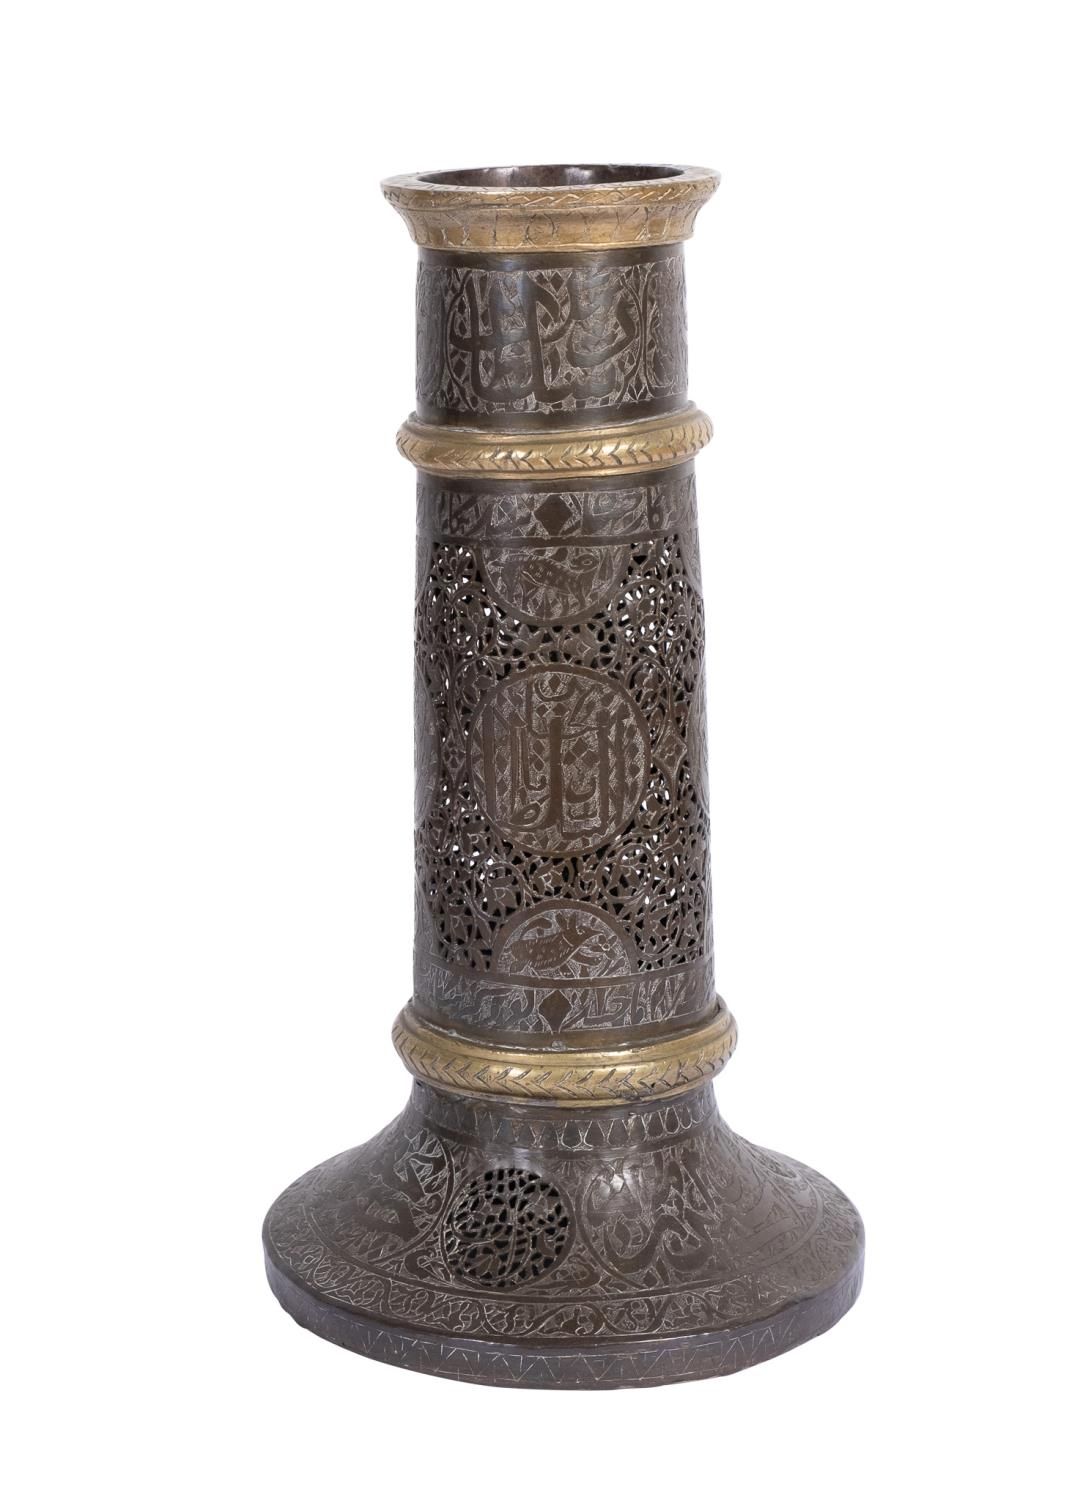 Null ZAND或QAJAR DYNASTY刻字的铜质手杖架MASH'AL可能是SHIRAZ
 
 高度：29厘米